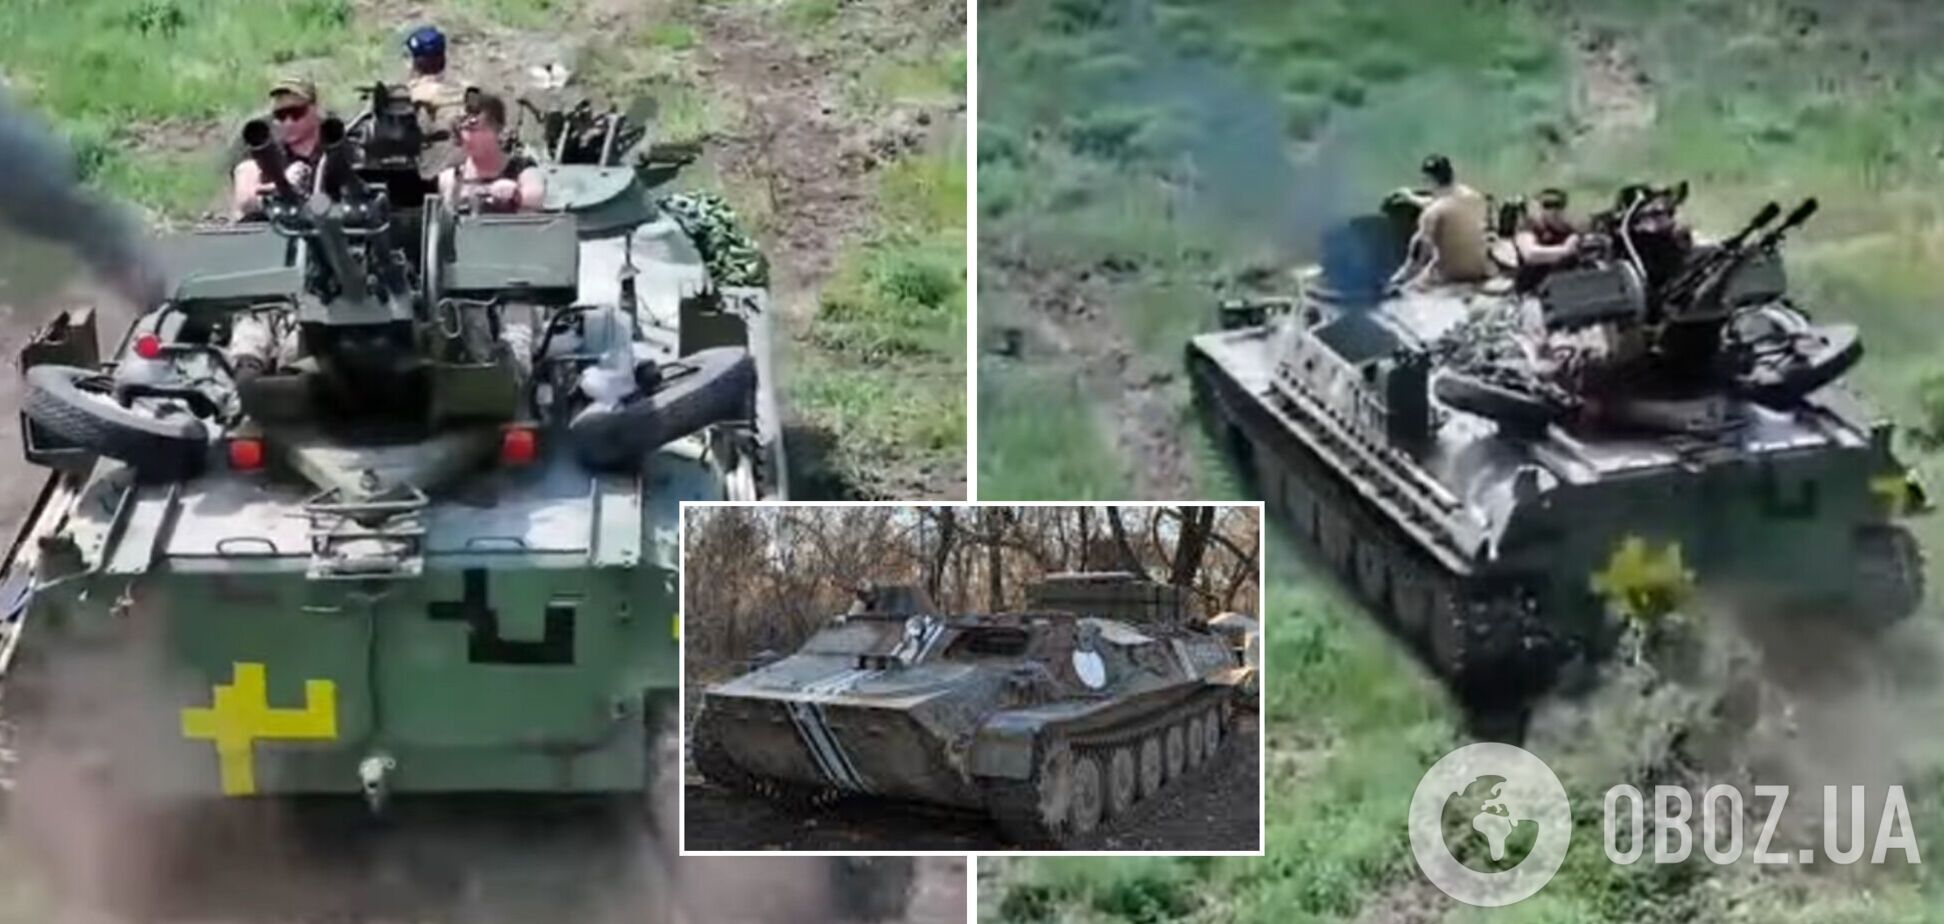 Украинские защитники модернизировали трофейную бронетехнику оккупантов: теперь работает на ВСУ и уничтожает врагов. Видео